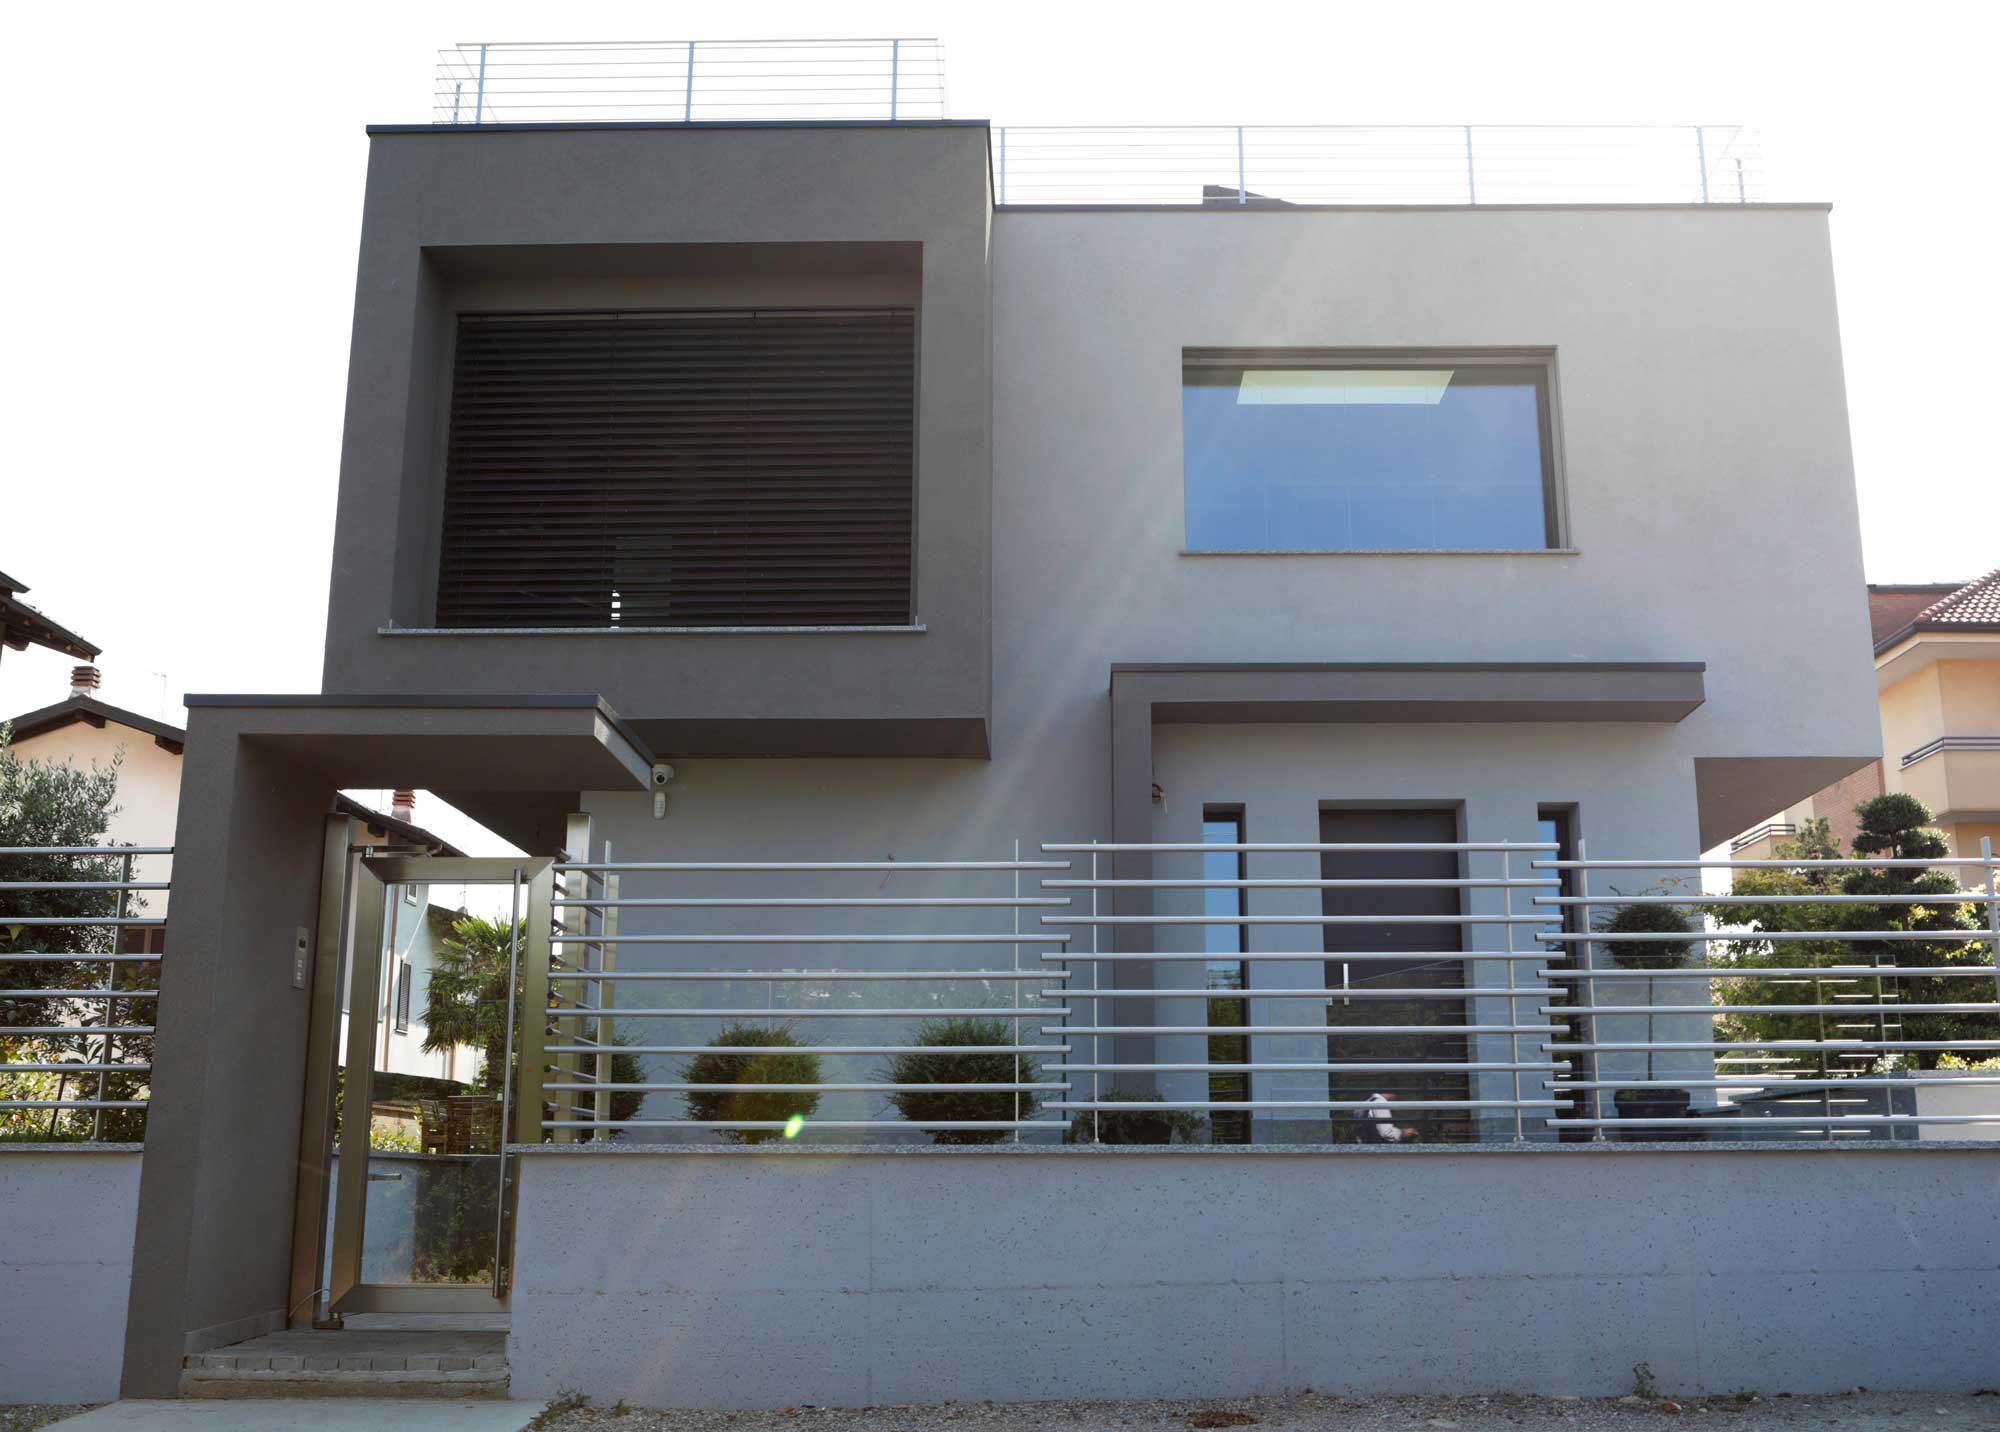 Image of Villa barbotti 1 in Dekton's versatility takes the form of a private villa - Cosentino